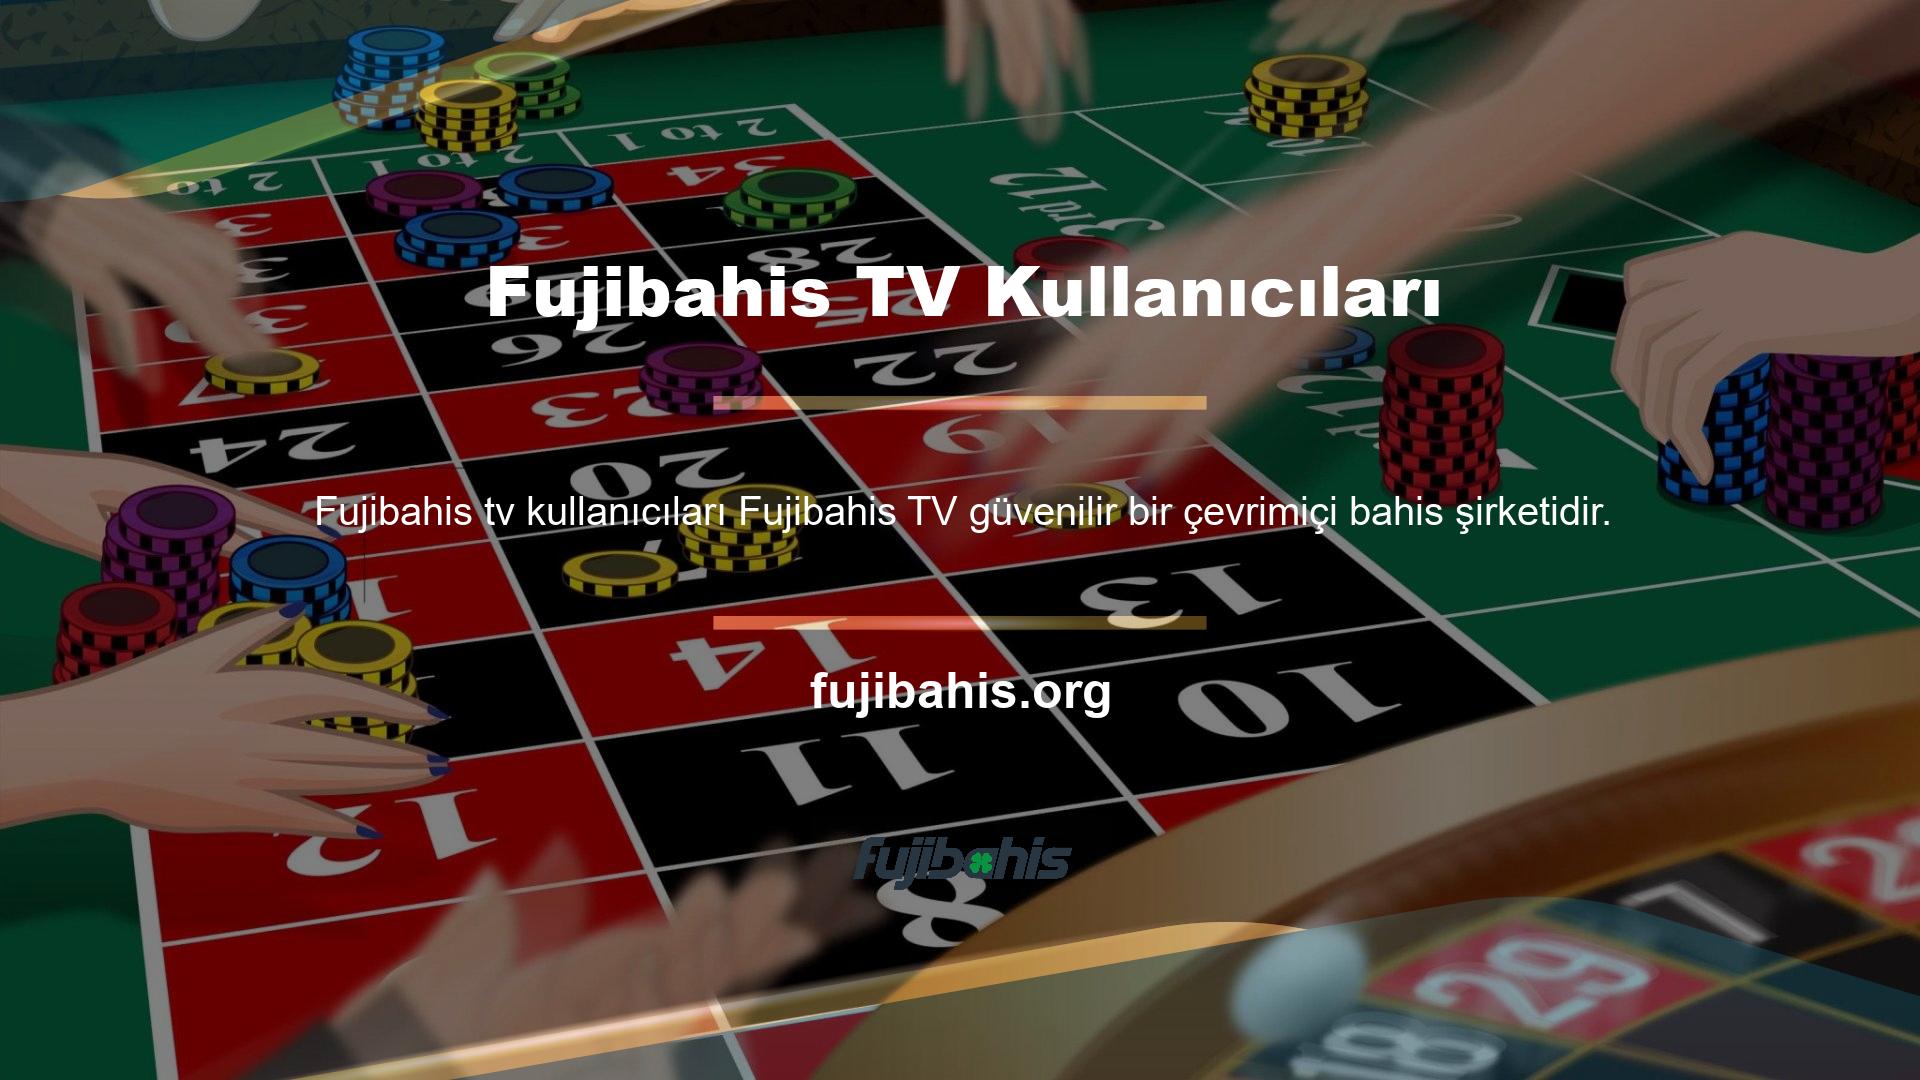 Fujibahis, kullanıcılara basit ve şık bir web arayüzü sunmaktadır